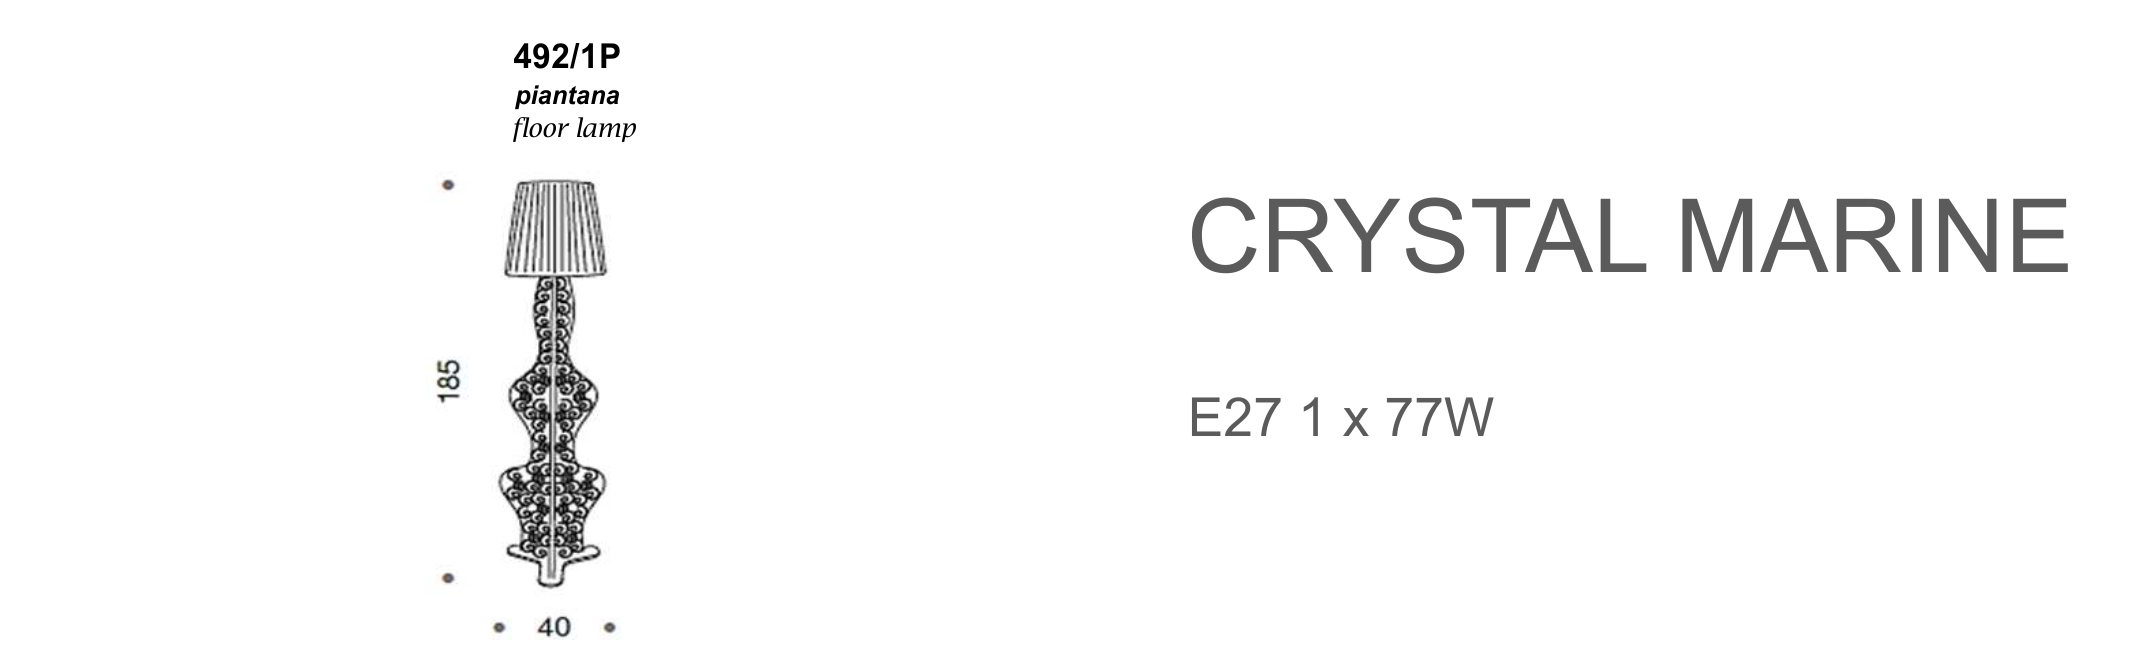 Crystal Marine 492/1P